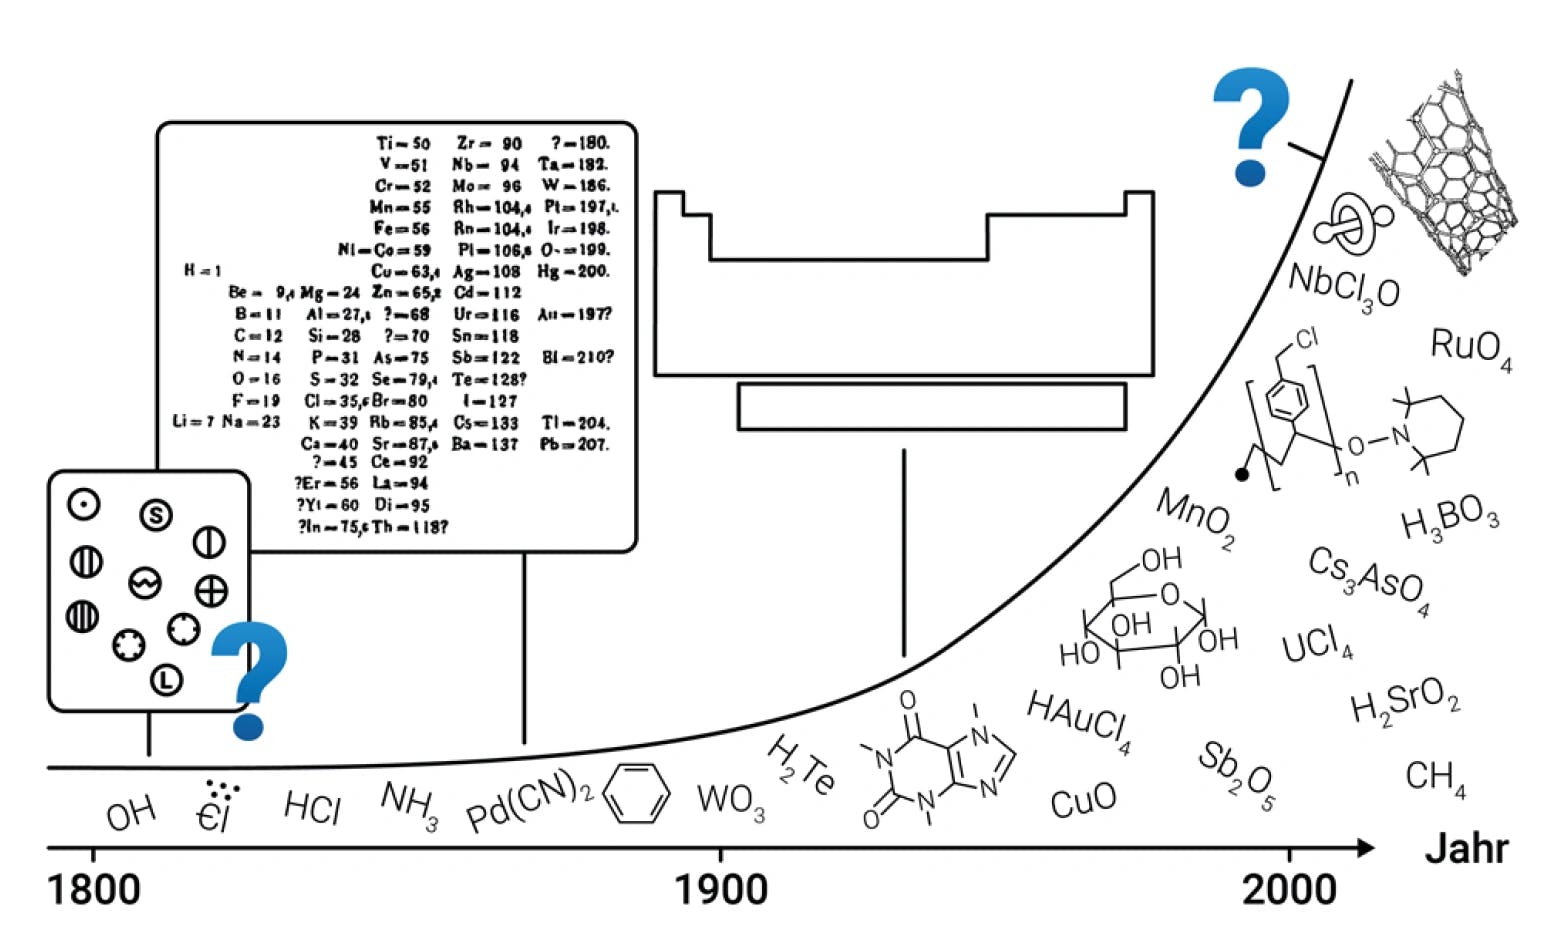 Das periodische System und die Evolution des chemischen Raums